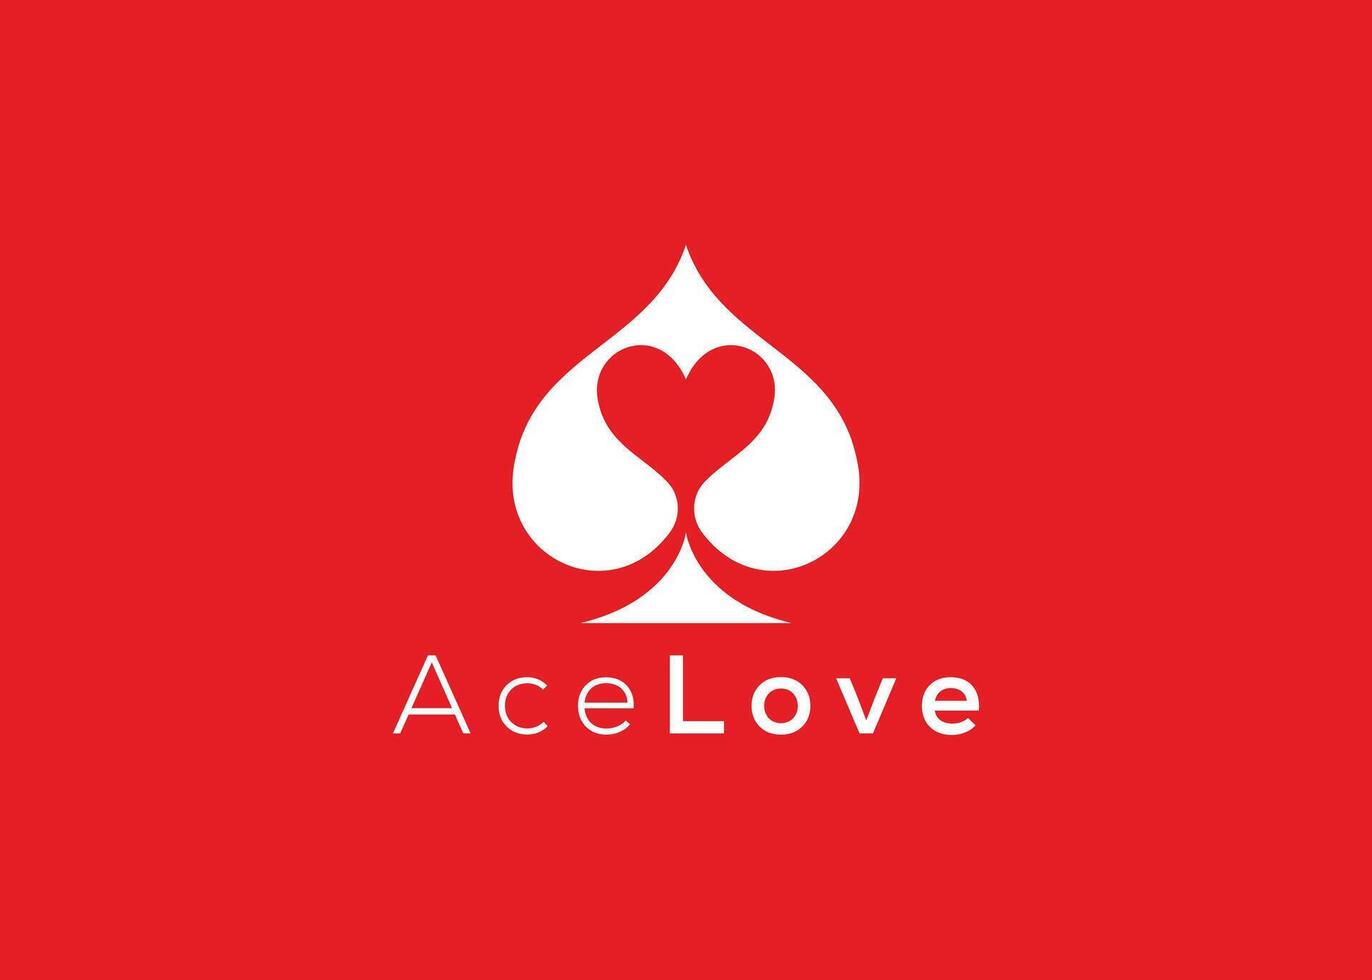 minimalistisk ess kärlek logotyp design vektor mall. kreativ röd hjärta ess form logotyp